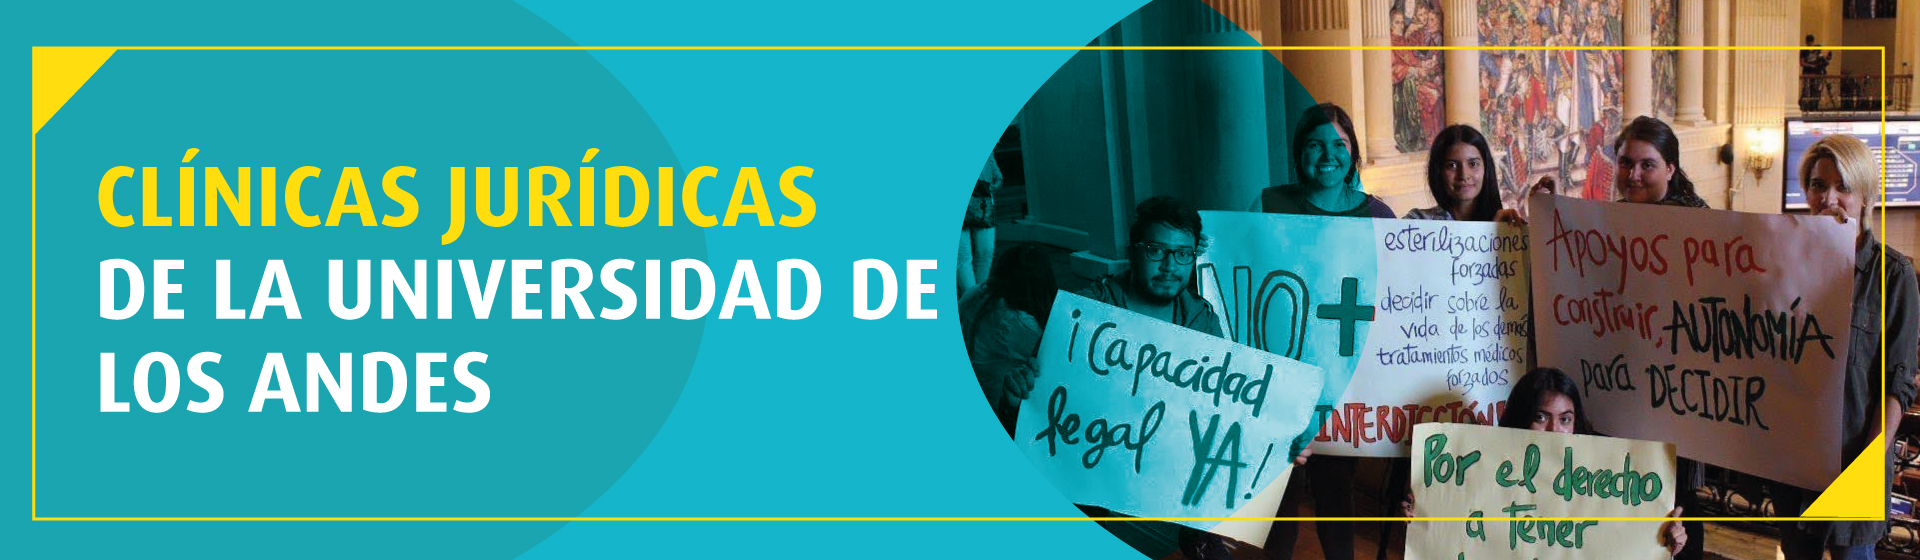 Clínicas jurídicas de la Universidad de los Andes: por la protección de los DD. HH. y el interés público